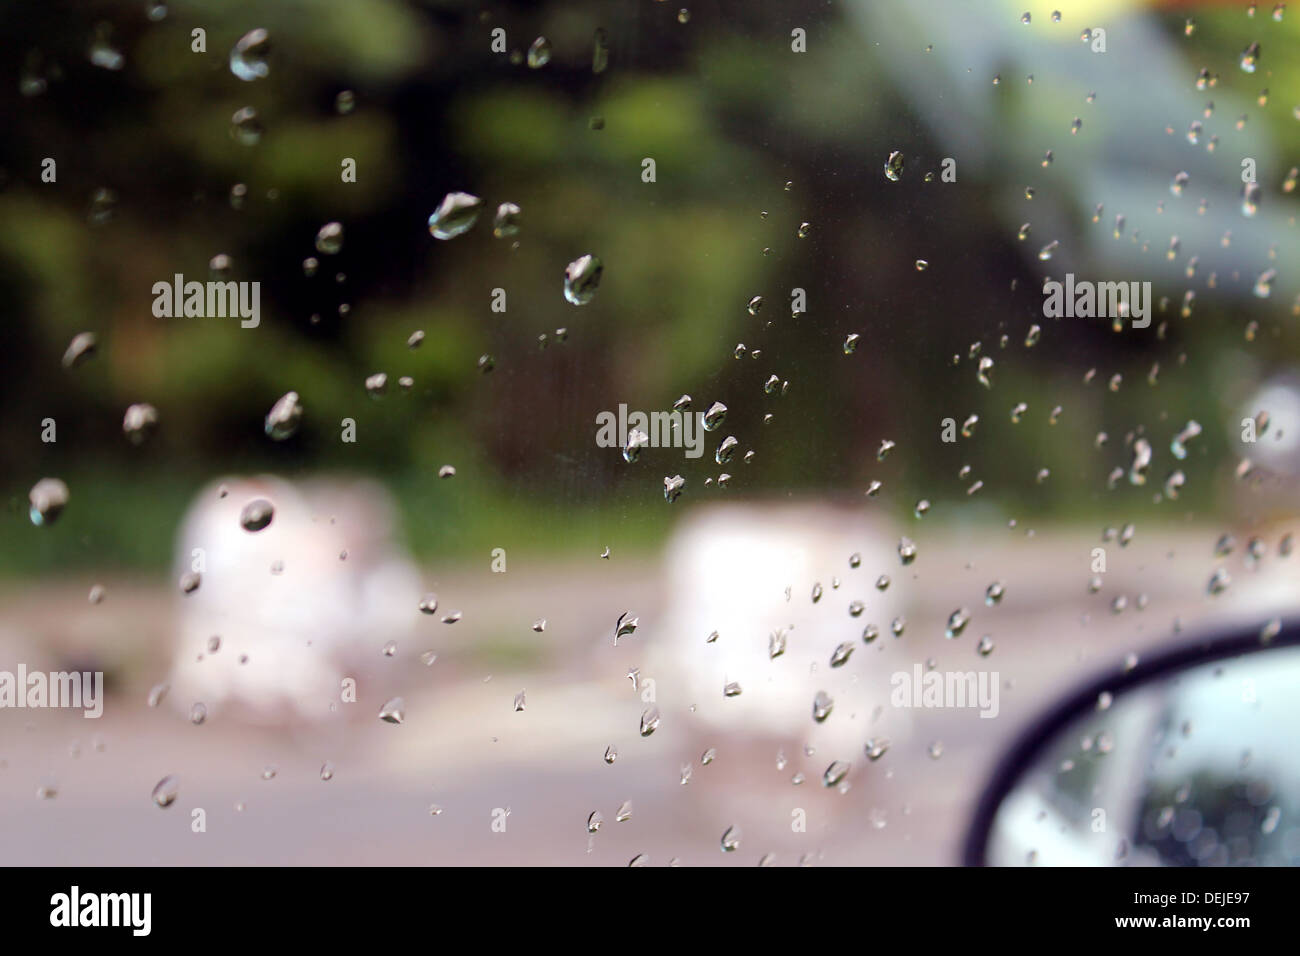 Les gouttes de pluie dans la fenêtre d'une voiture Banque D'Images